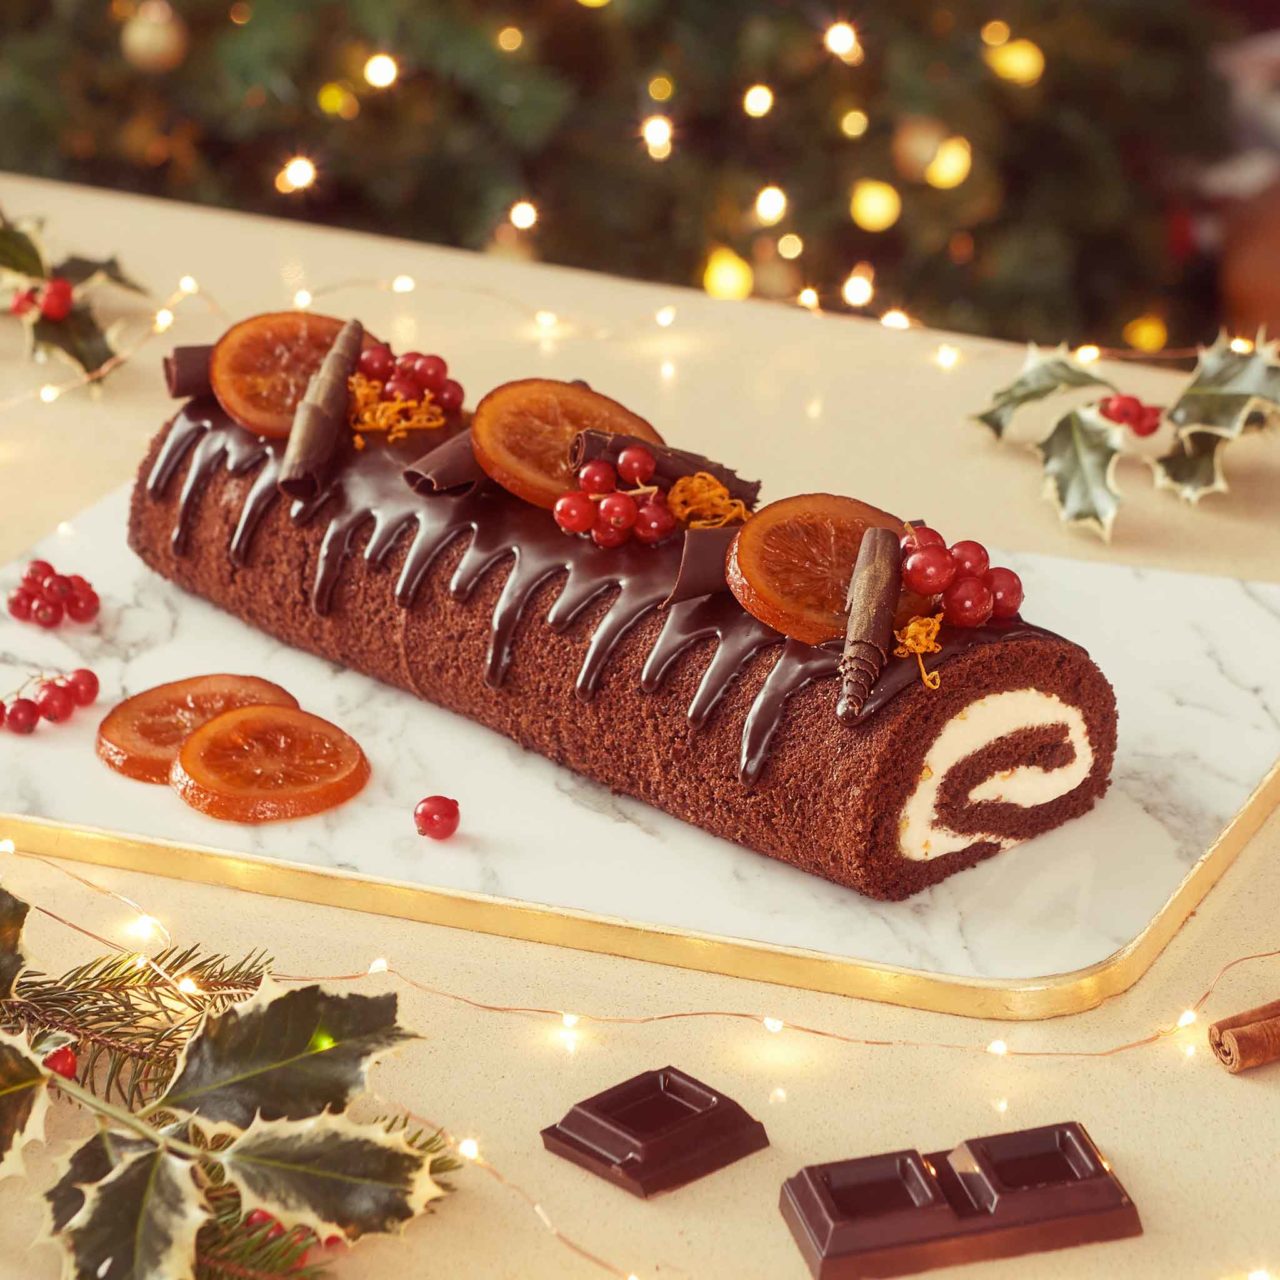 Ingredienti Tronchetto Di Natale.La Ricetta Del Tronchetto Di Natale Al Cioccolato